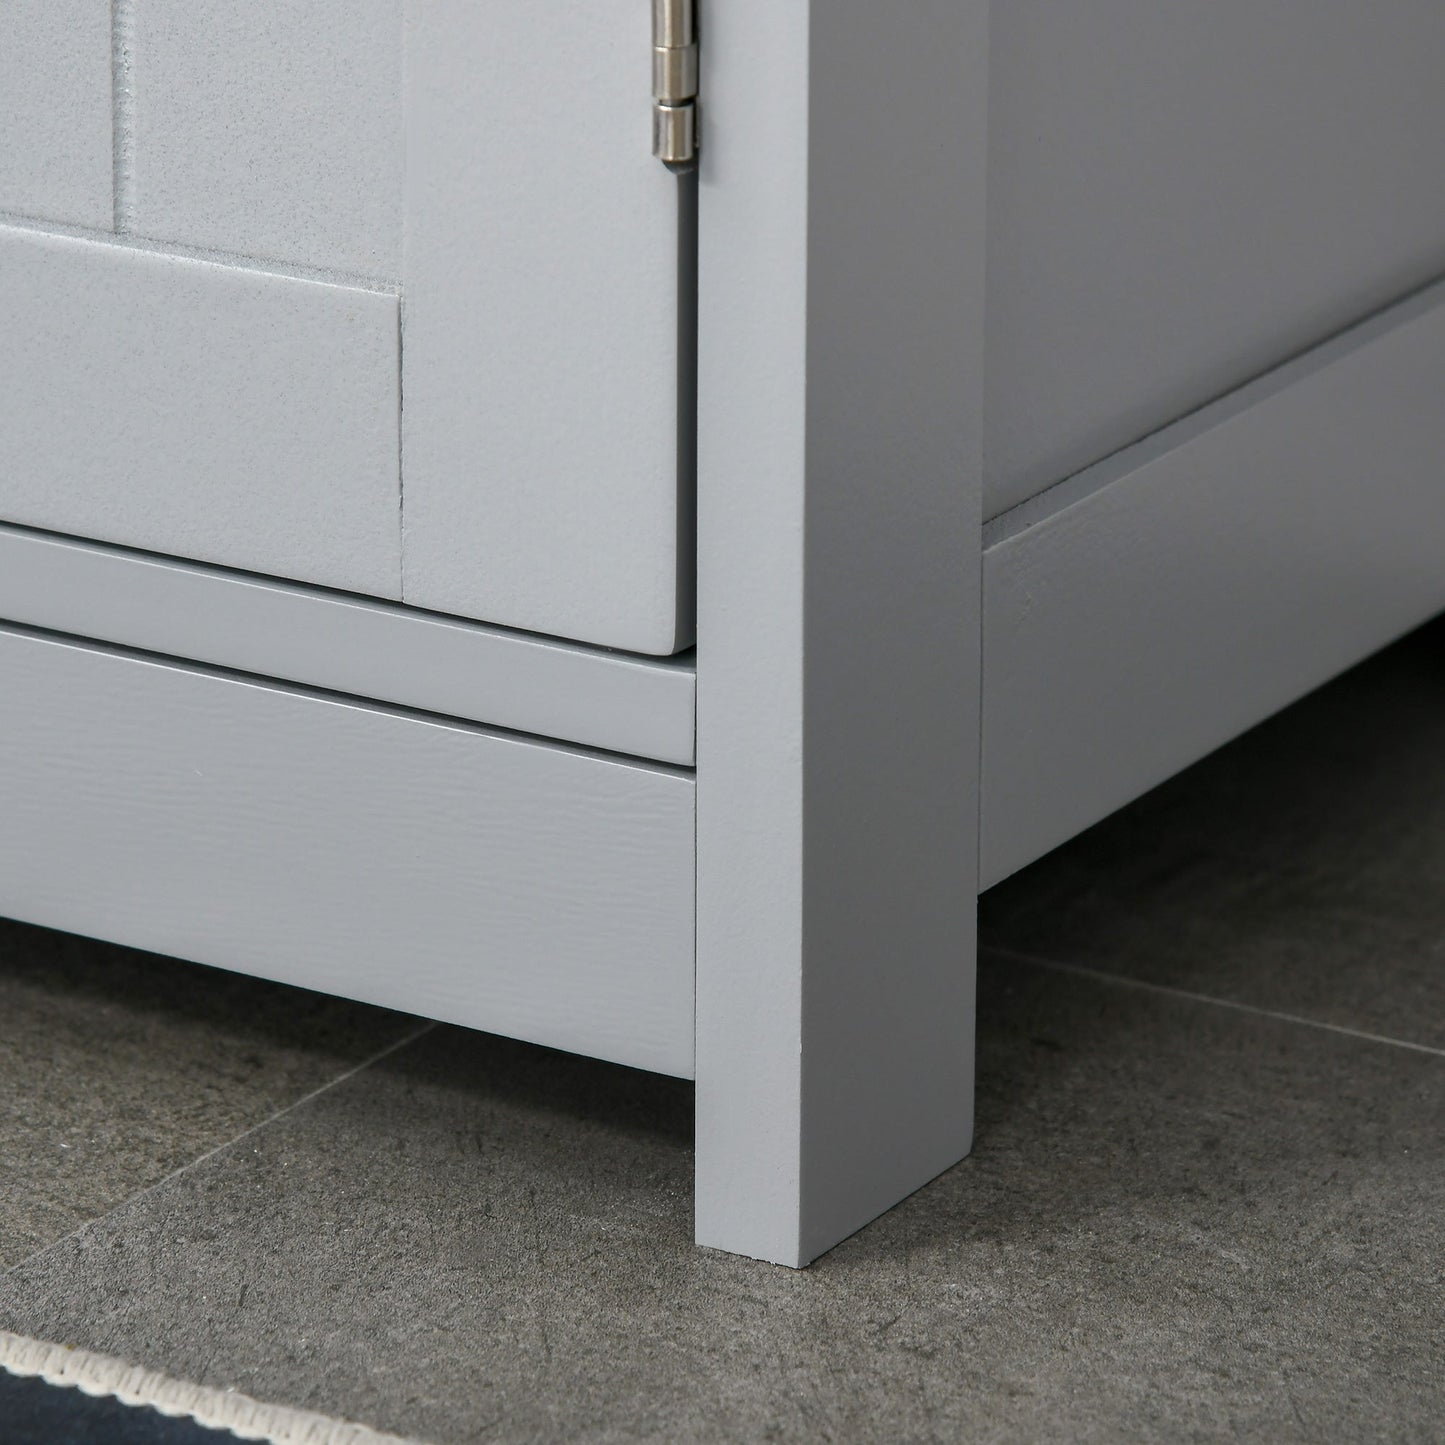 kleankin 60x60cm Under-Sink Storage Cabinet w/ Adjustable Shelf Handles Drain Hole Bathroom Cabinet Space Saver Organizer Grey Handle